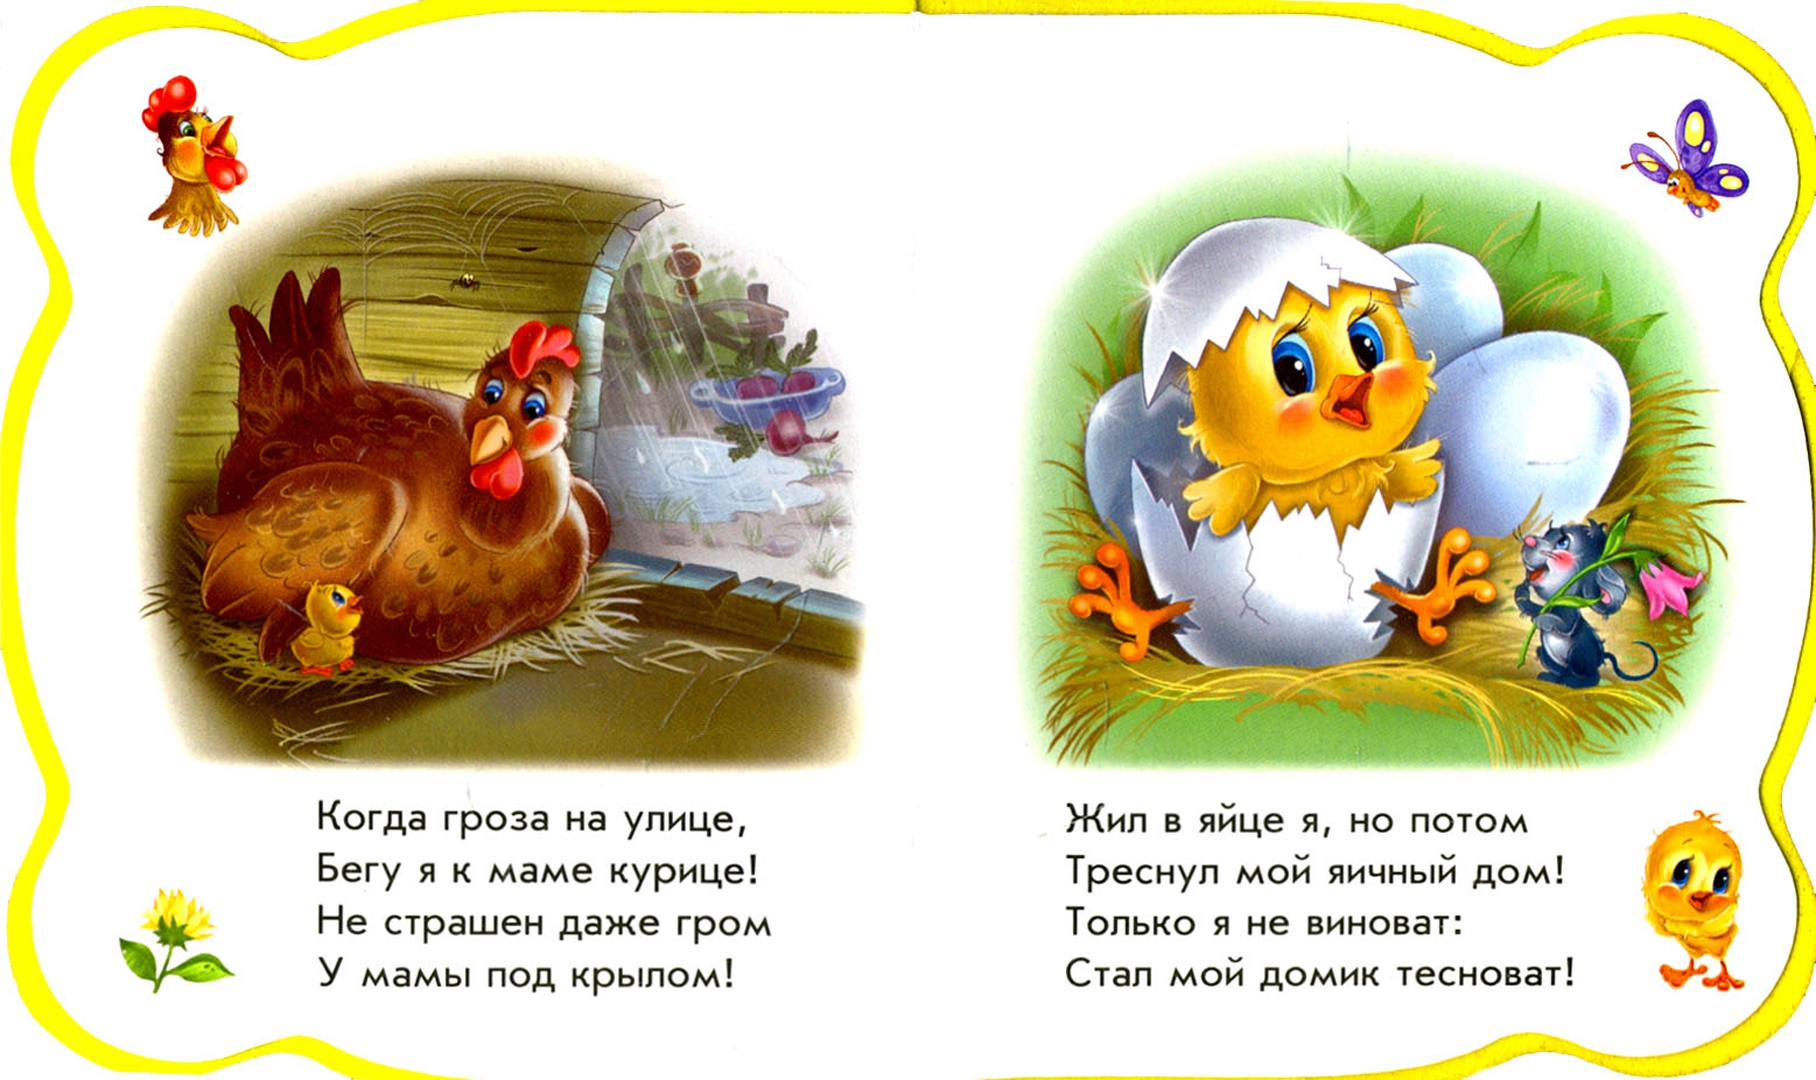 Иллюстрация 1 из 18 для Все про цыпленка - Ирина Солнышко | Лабиринт - книги. Источник: Лабиринт